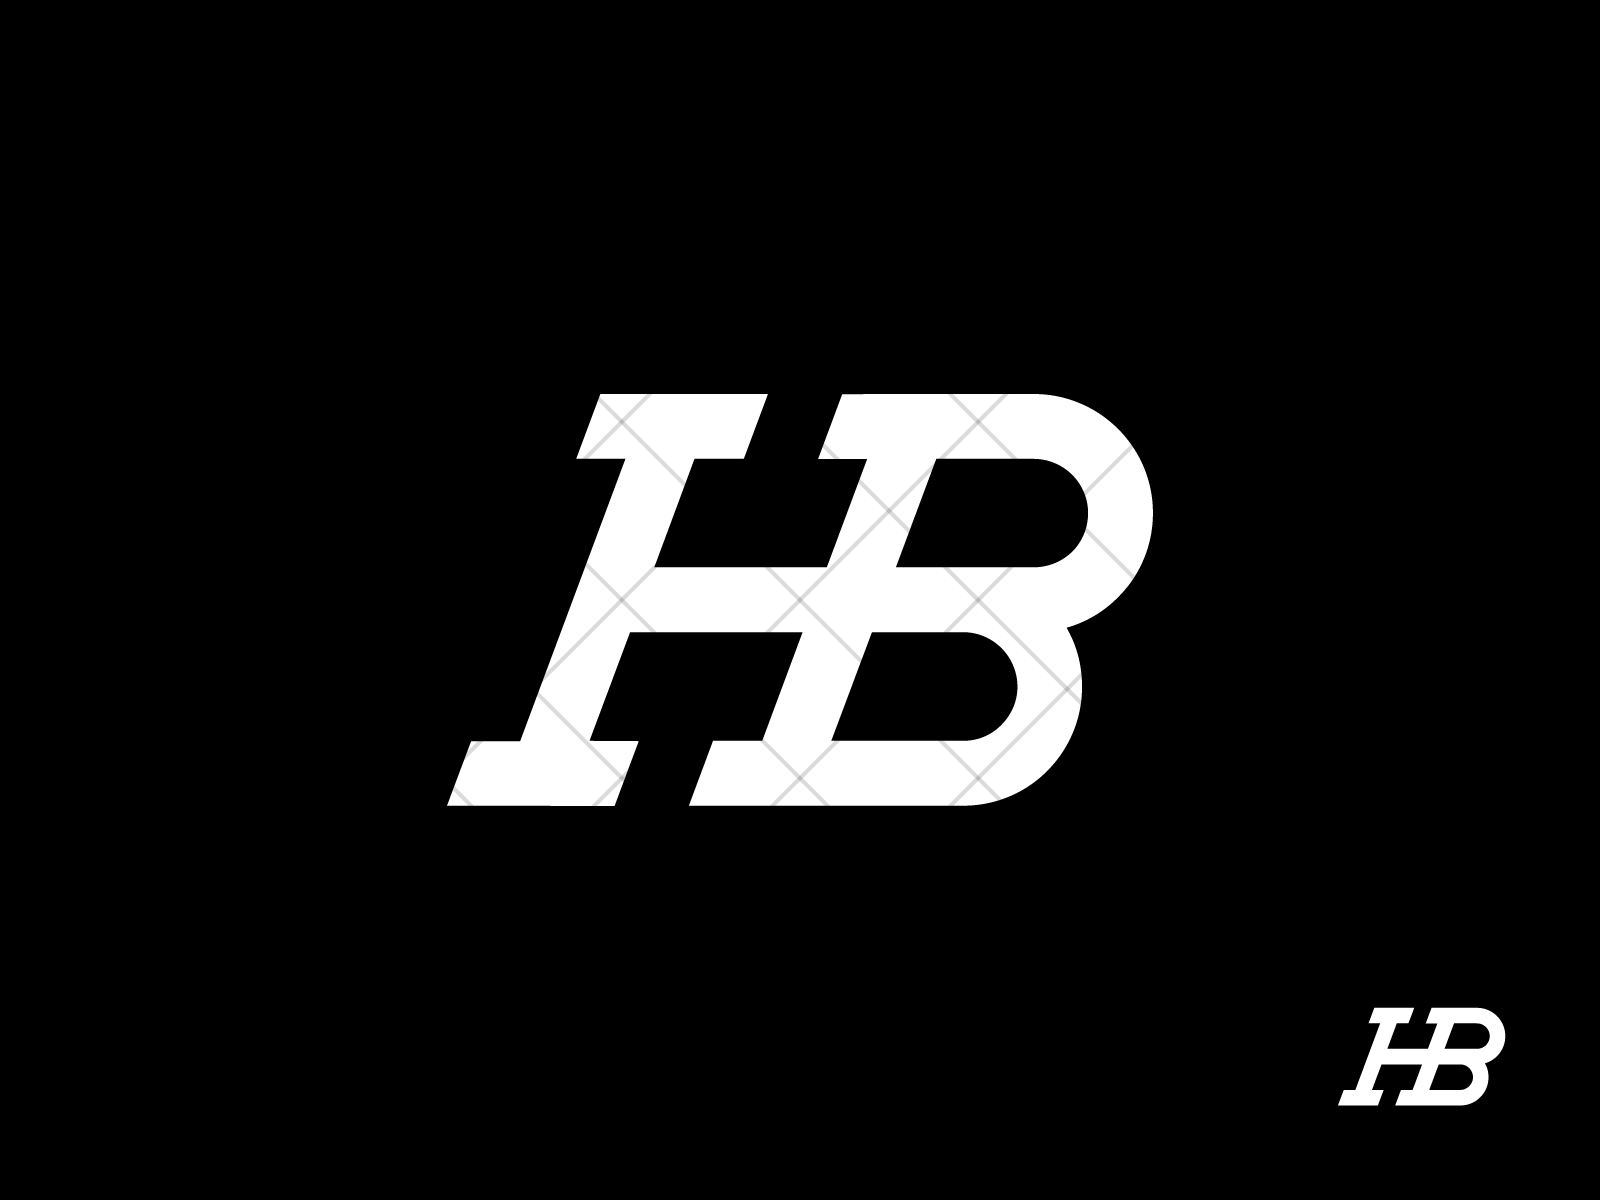 H-B Logo With Hazbin Hotel by ArtChanXV on DeviantArt